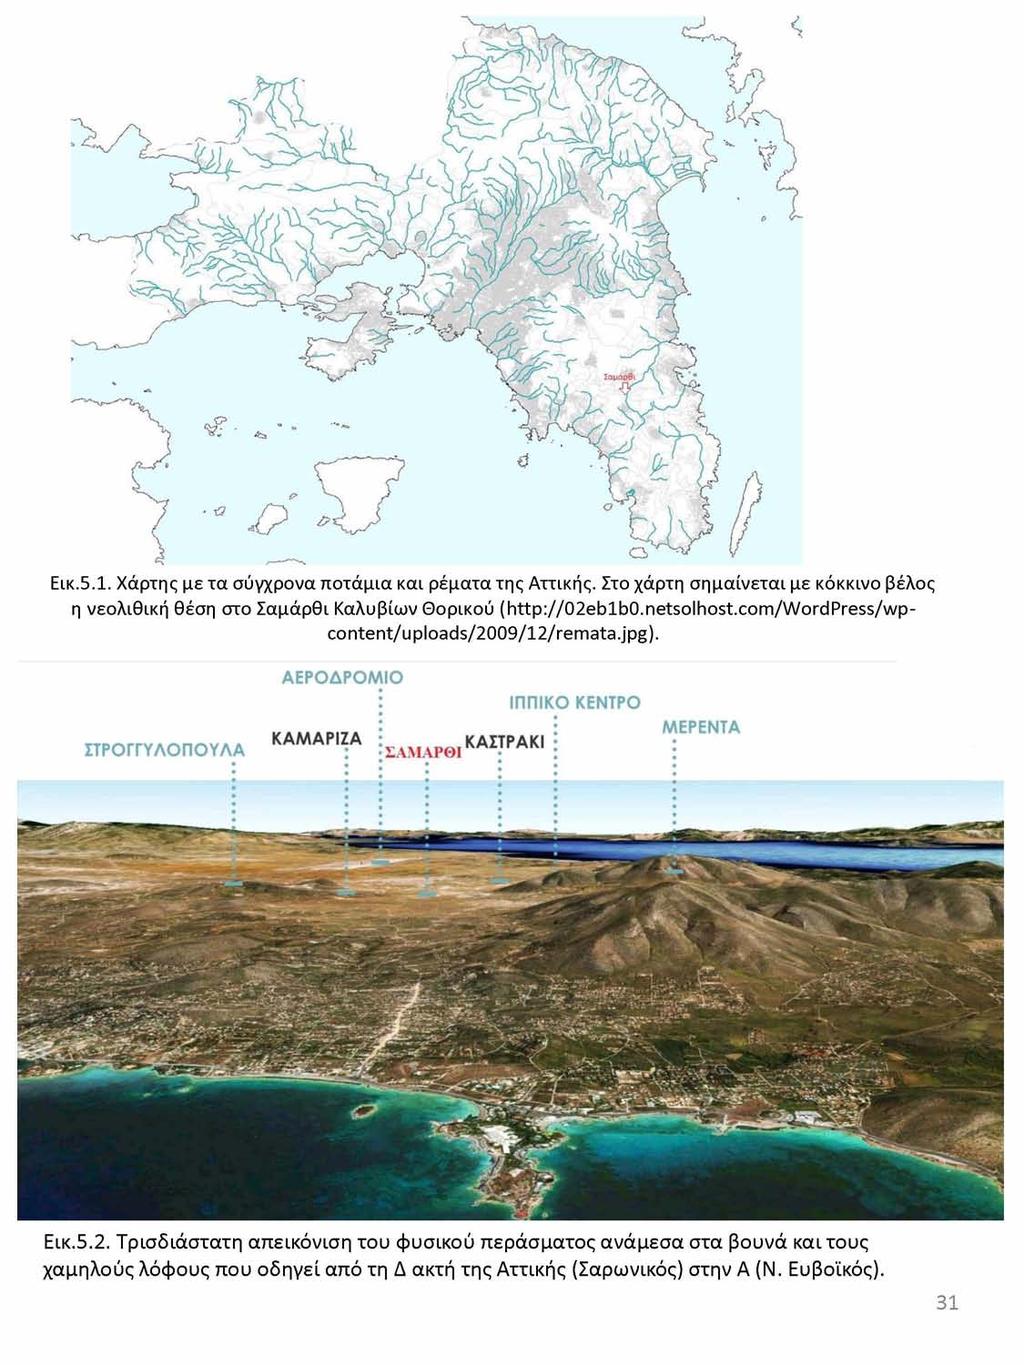 Εικ.5.1. Χάρτης με τα σύγχρονα ποτάμια και ρέματα της Αττικής. Στο χάρτη σημαίνεται με κοκκινο βέλος η νεολιθική θέση στο Σαμάρθι Καλυβίων Θορικού (http://02eb1b0.netsolhost.